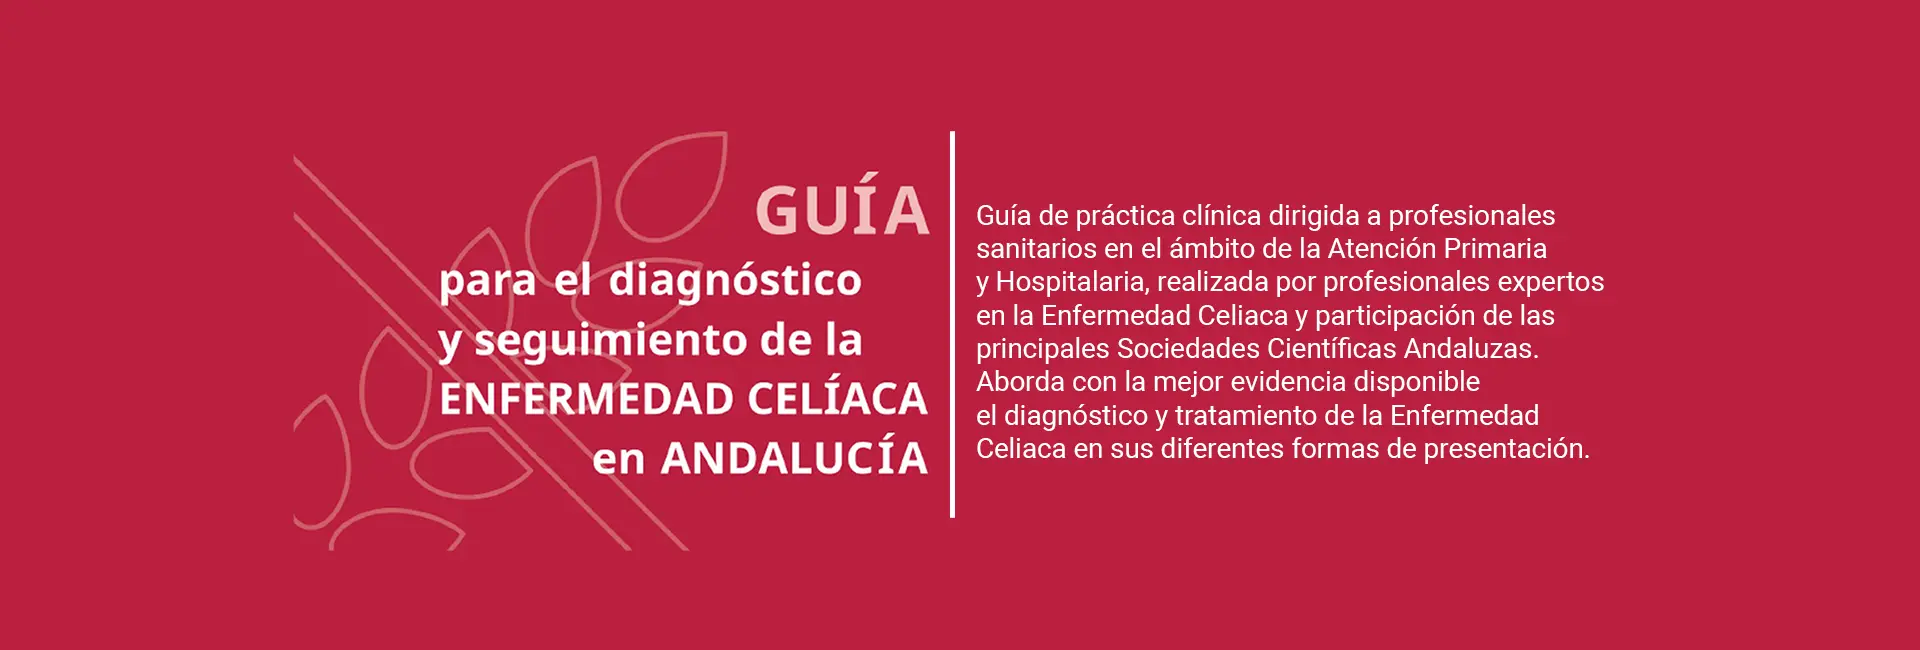 Guía para el diagnóstico y seguimiento de la Enfermedad Celíaca en Andalucía